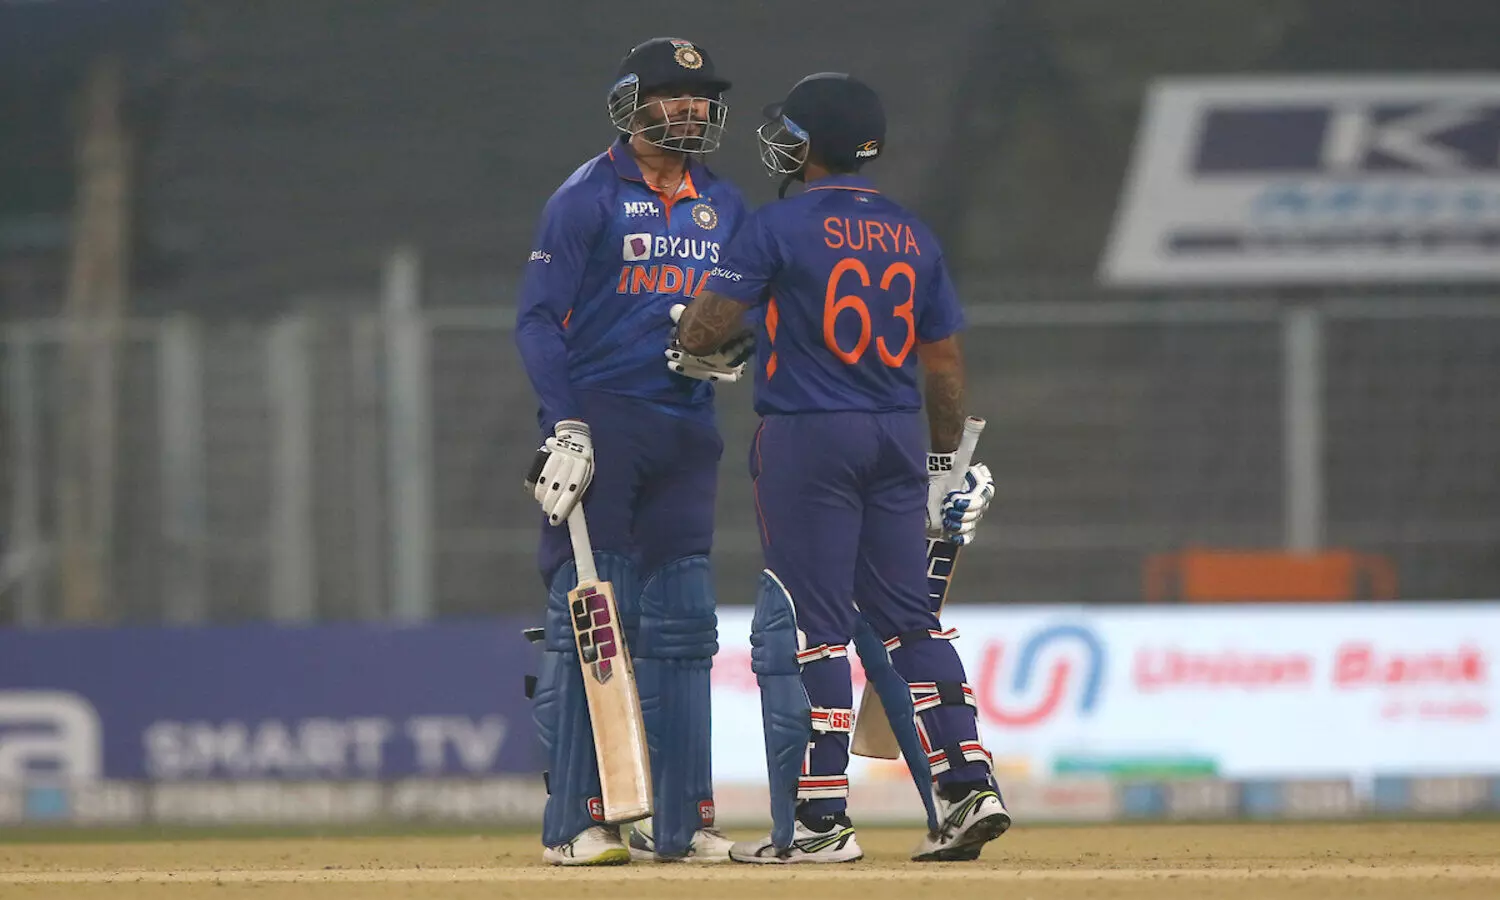 IND vs WI T20 3rd Match: वेंकटेश अय्यर का शानदार प्रदर्शन, धोनी और युवराज के बाद मिला नया फिनिशर